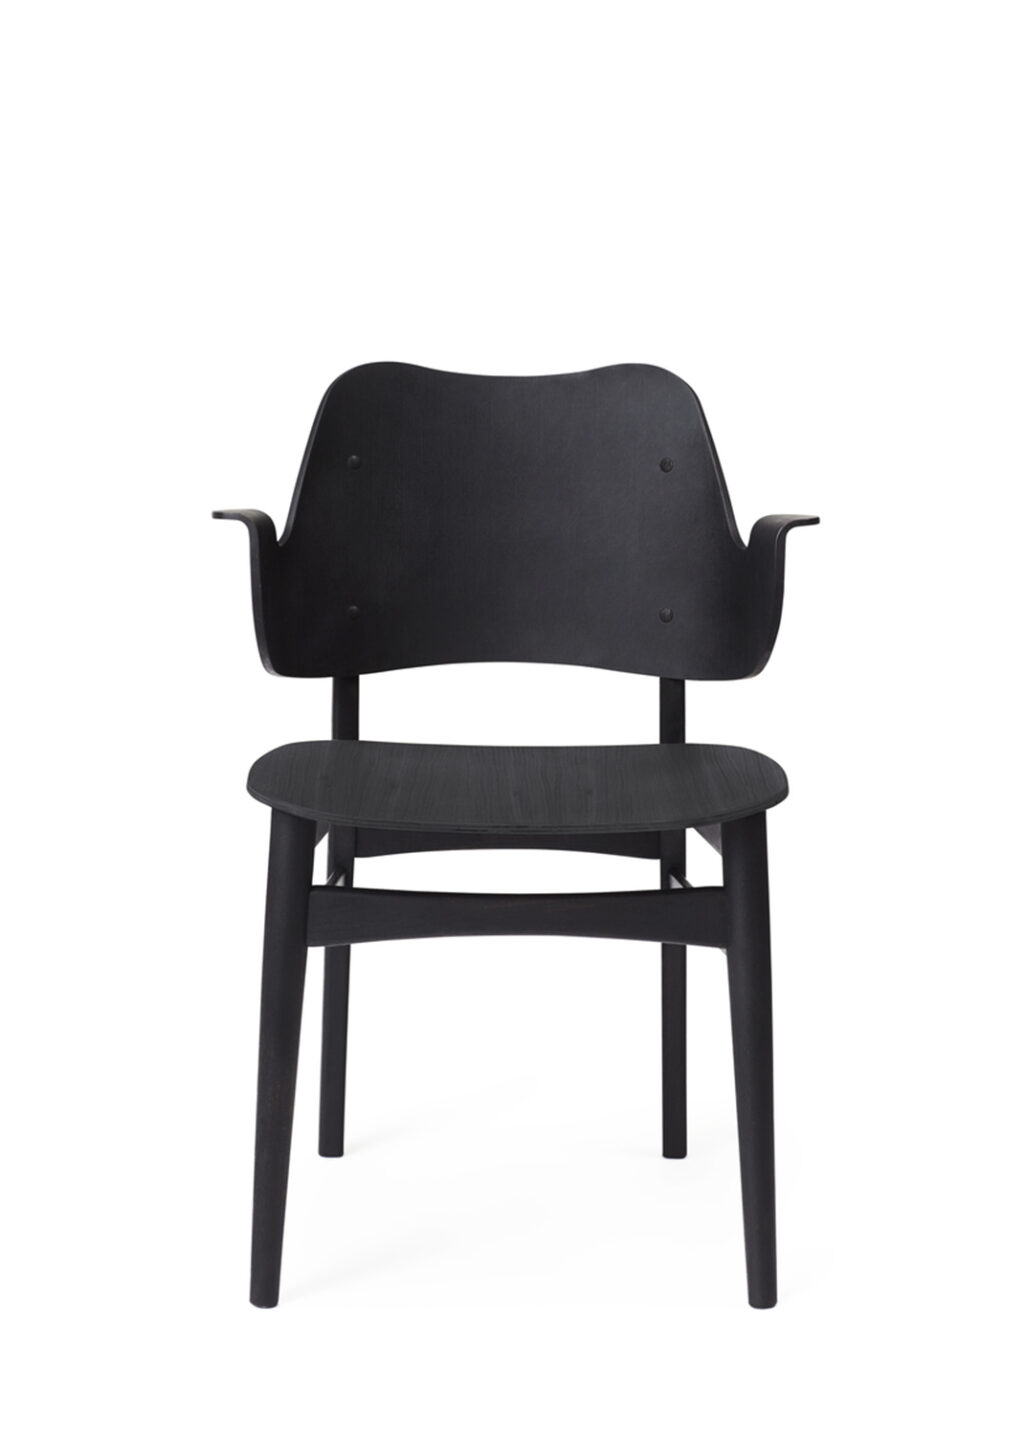 Warm Nordic, Hans Olsen, Gesture Chair, Paustian